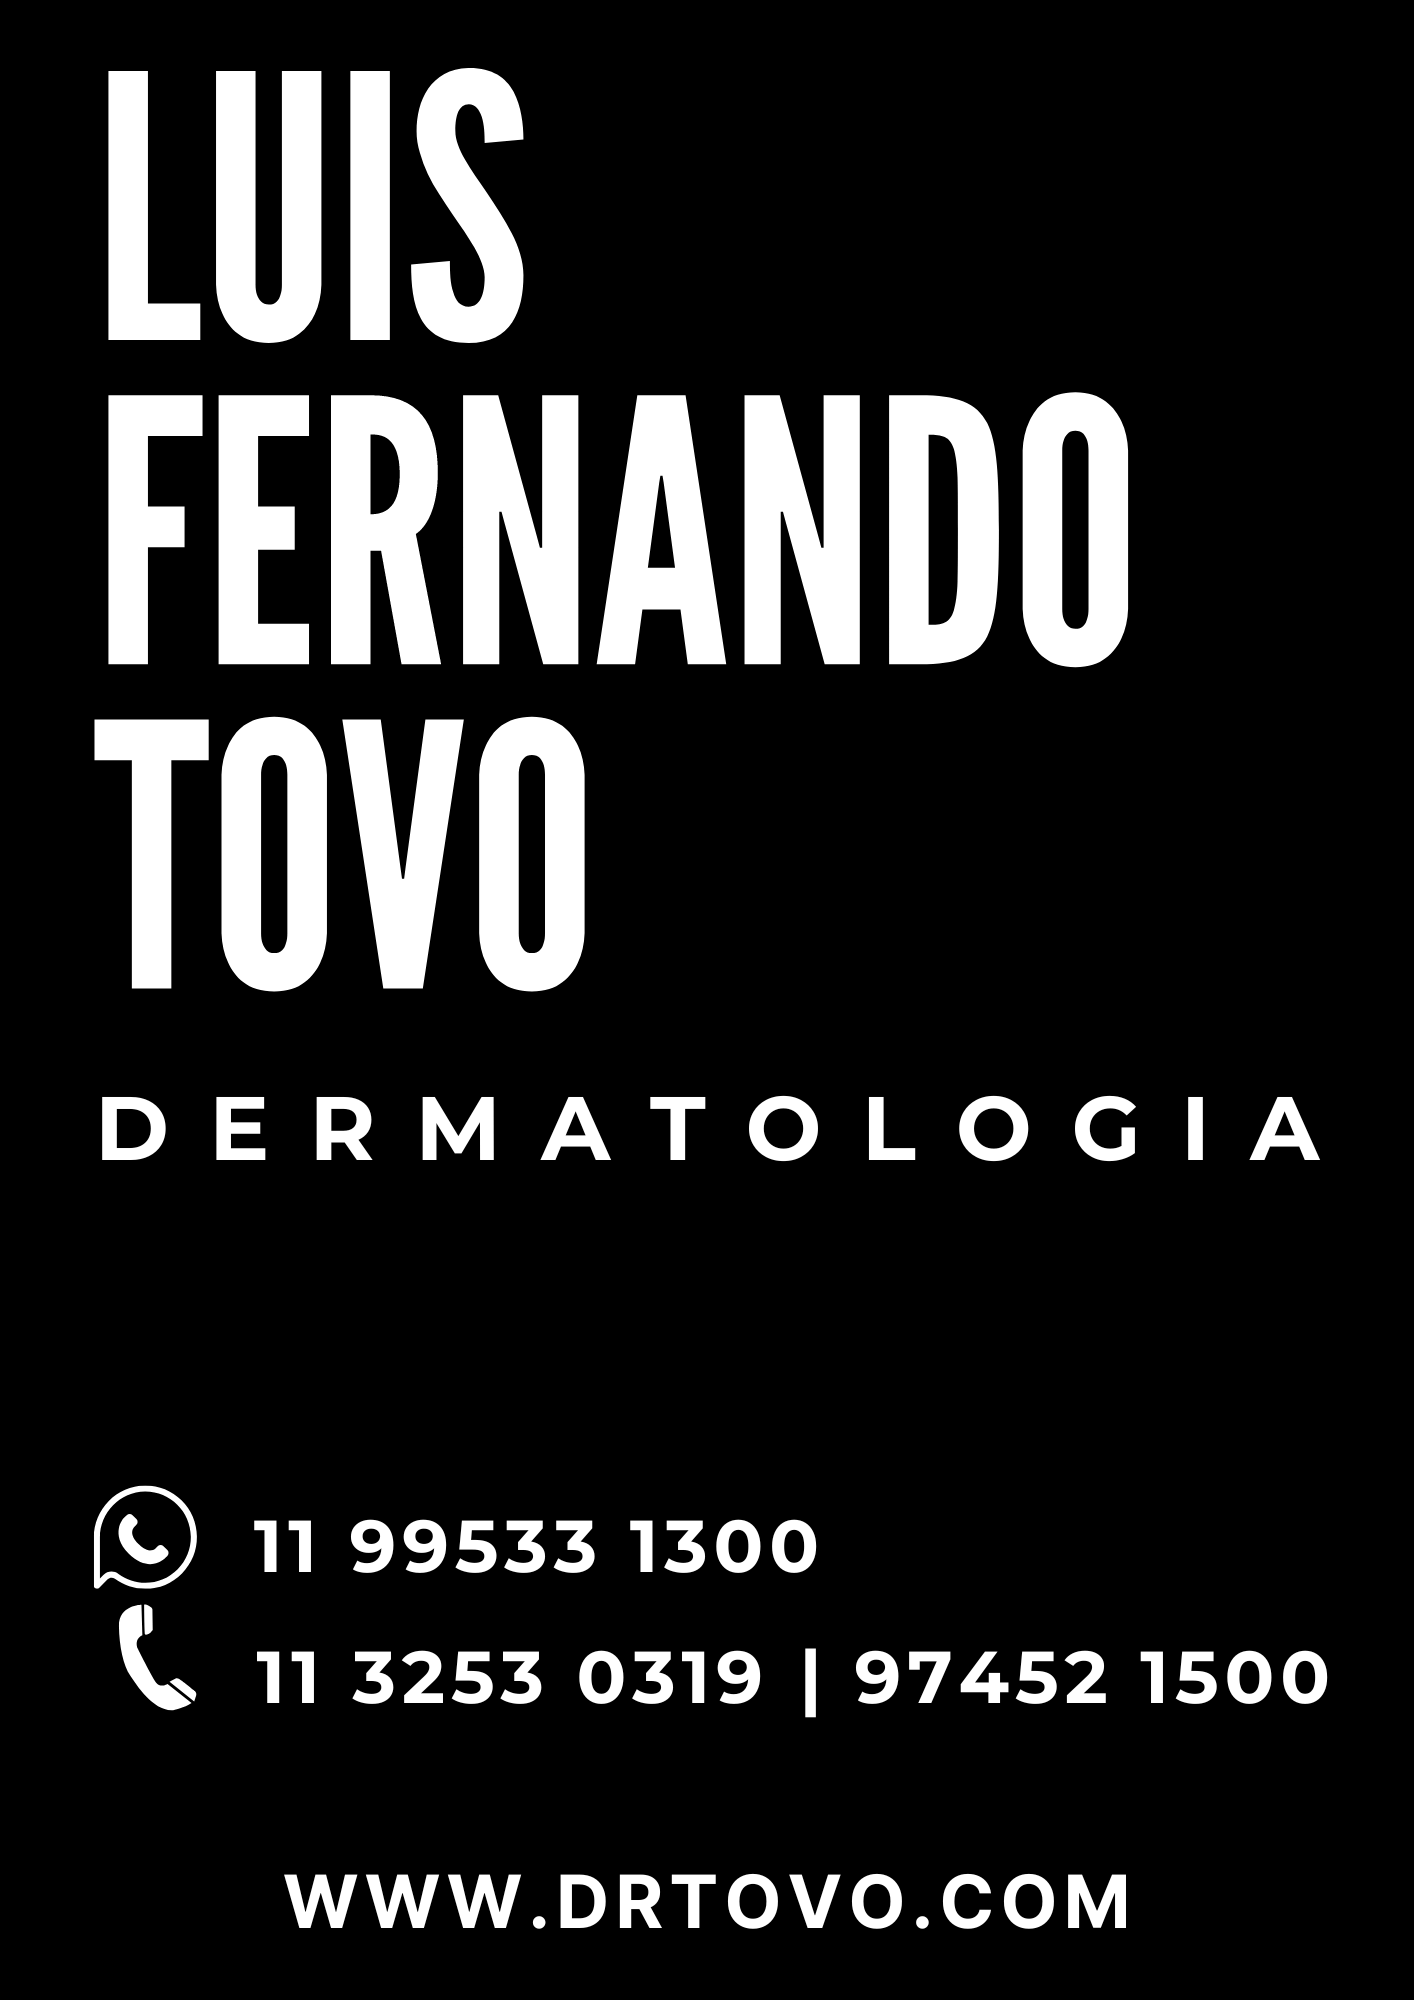 Dr Luis Fernando Tovo